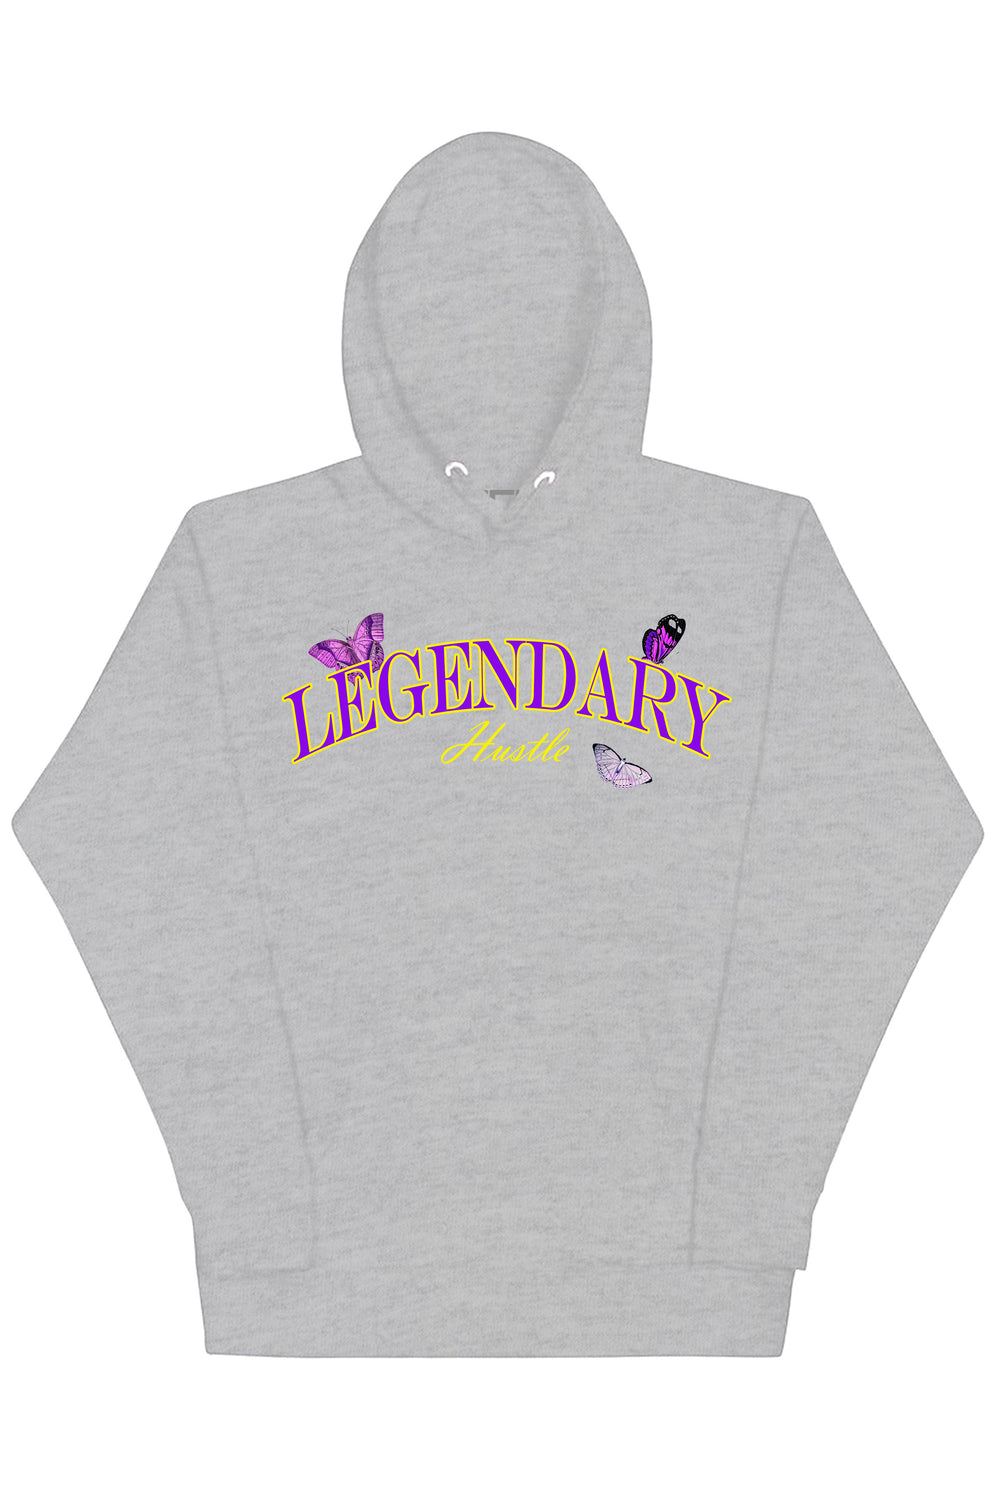 Legendary Hoodie (Purple - Gold Logo) - Zamage